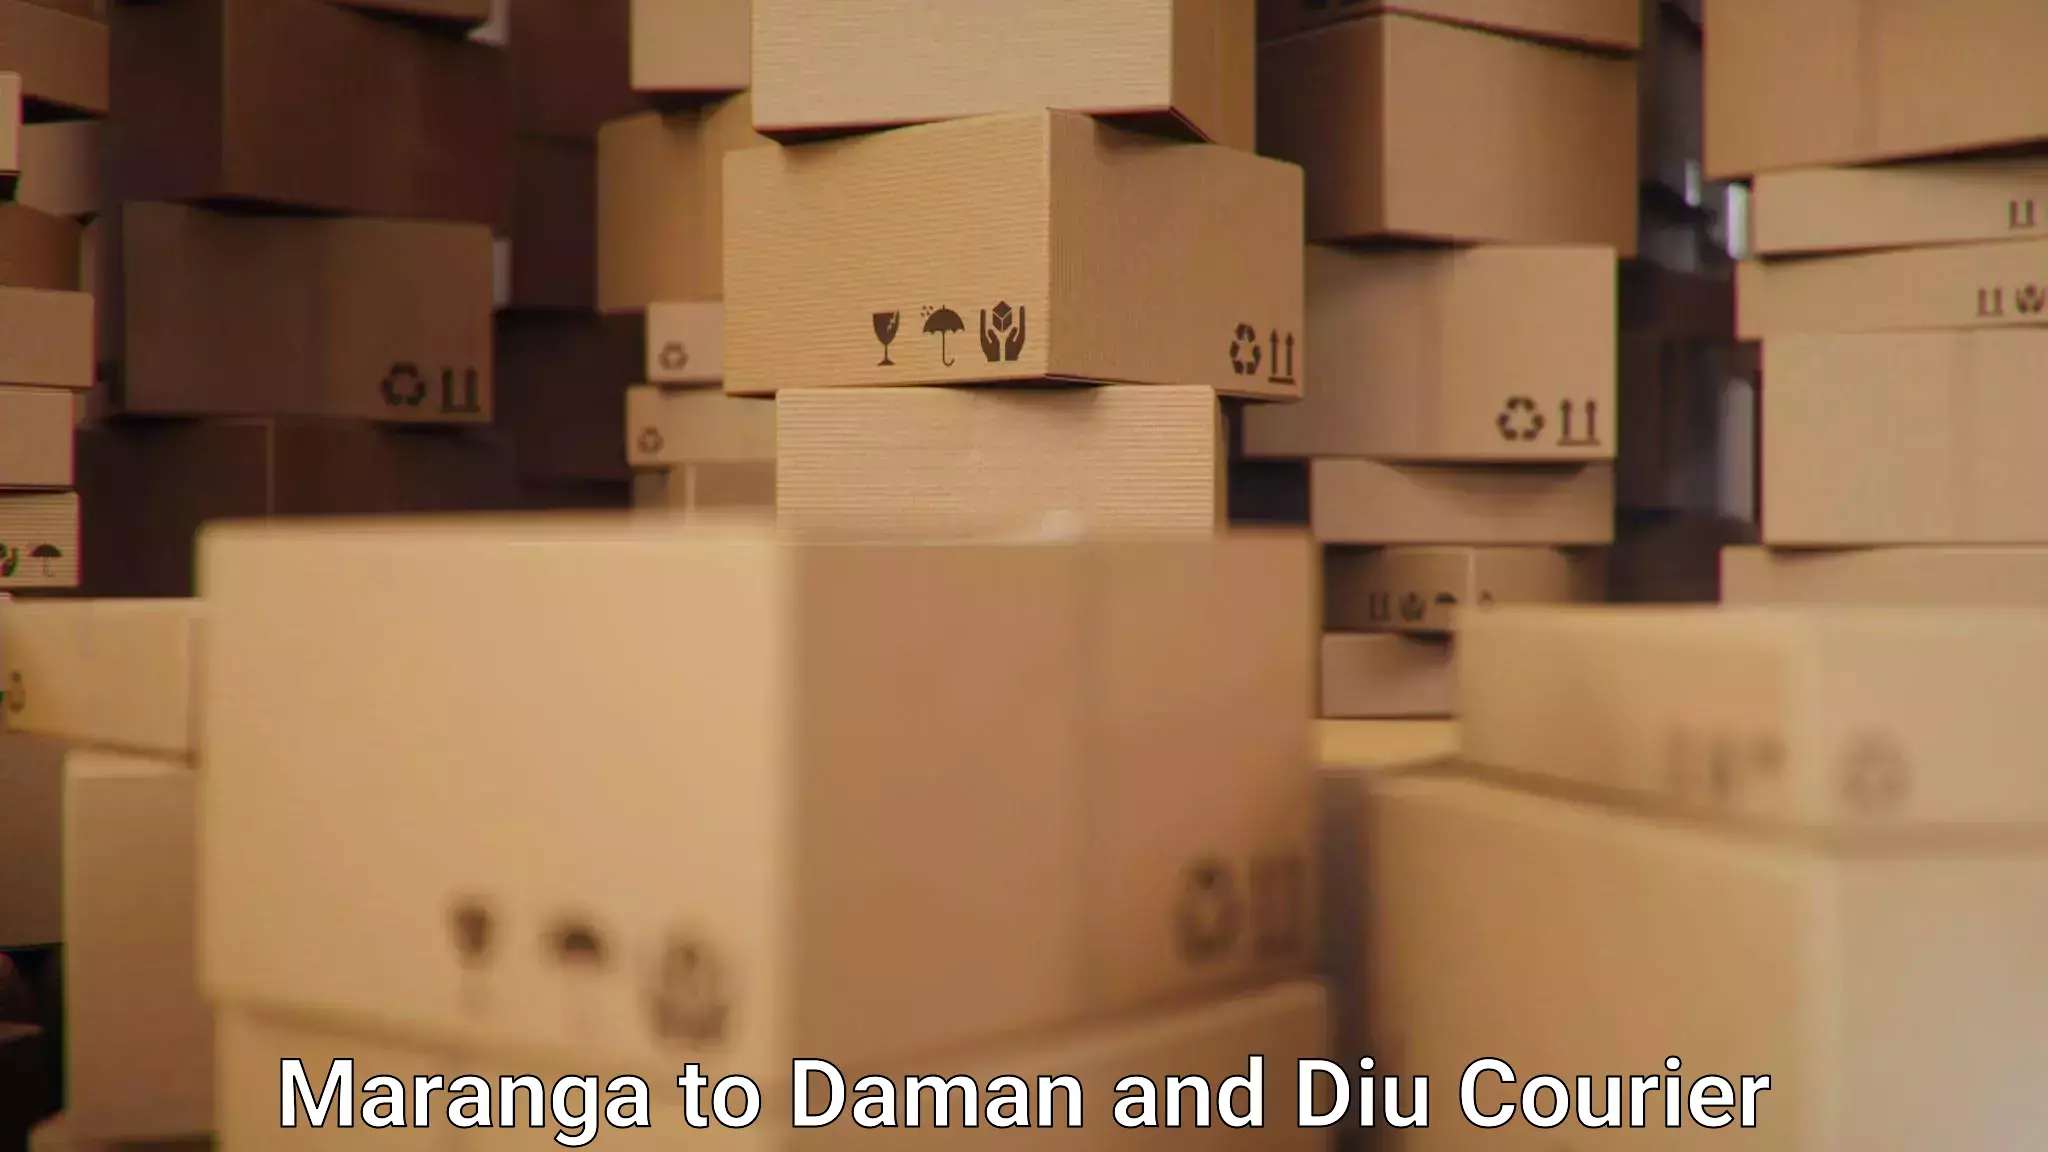 Seamless shipping service Maranga to Diu